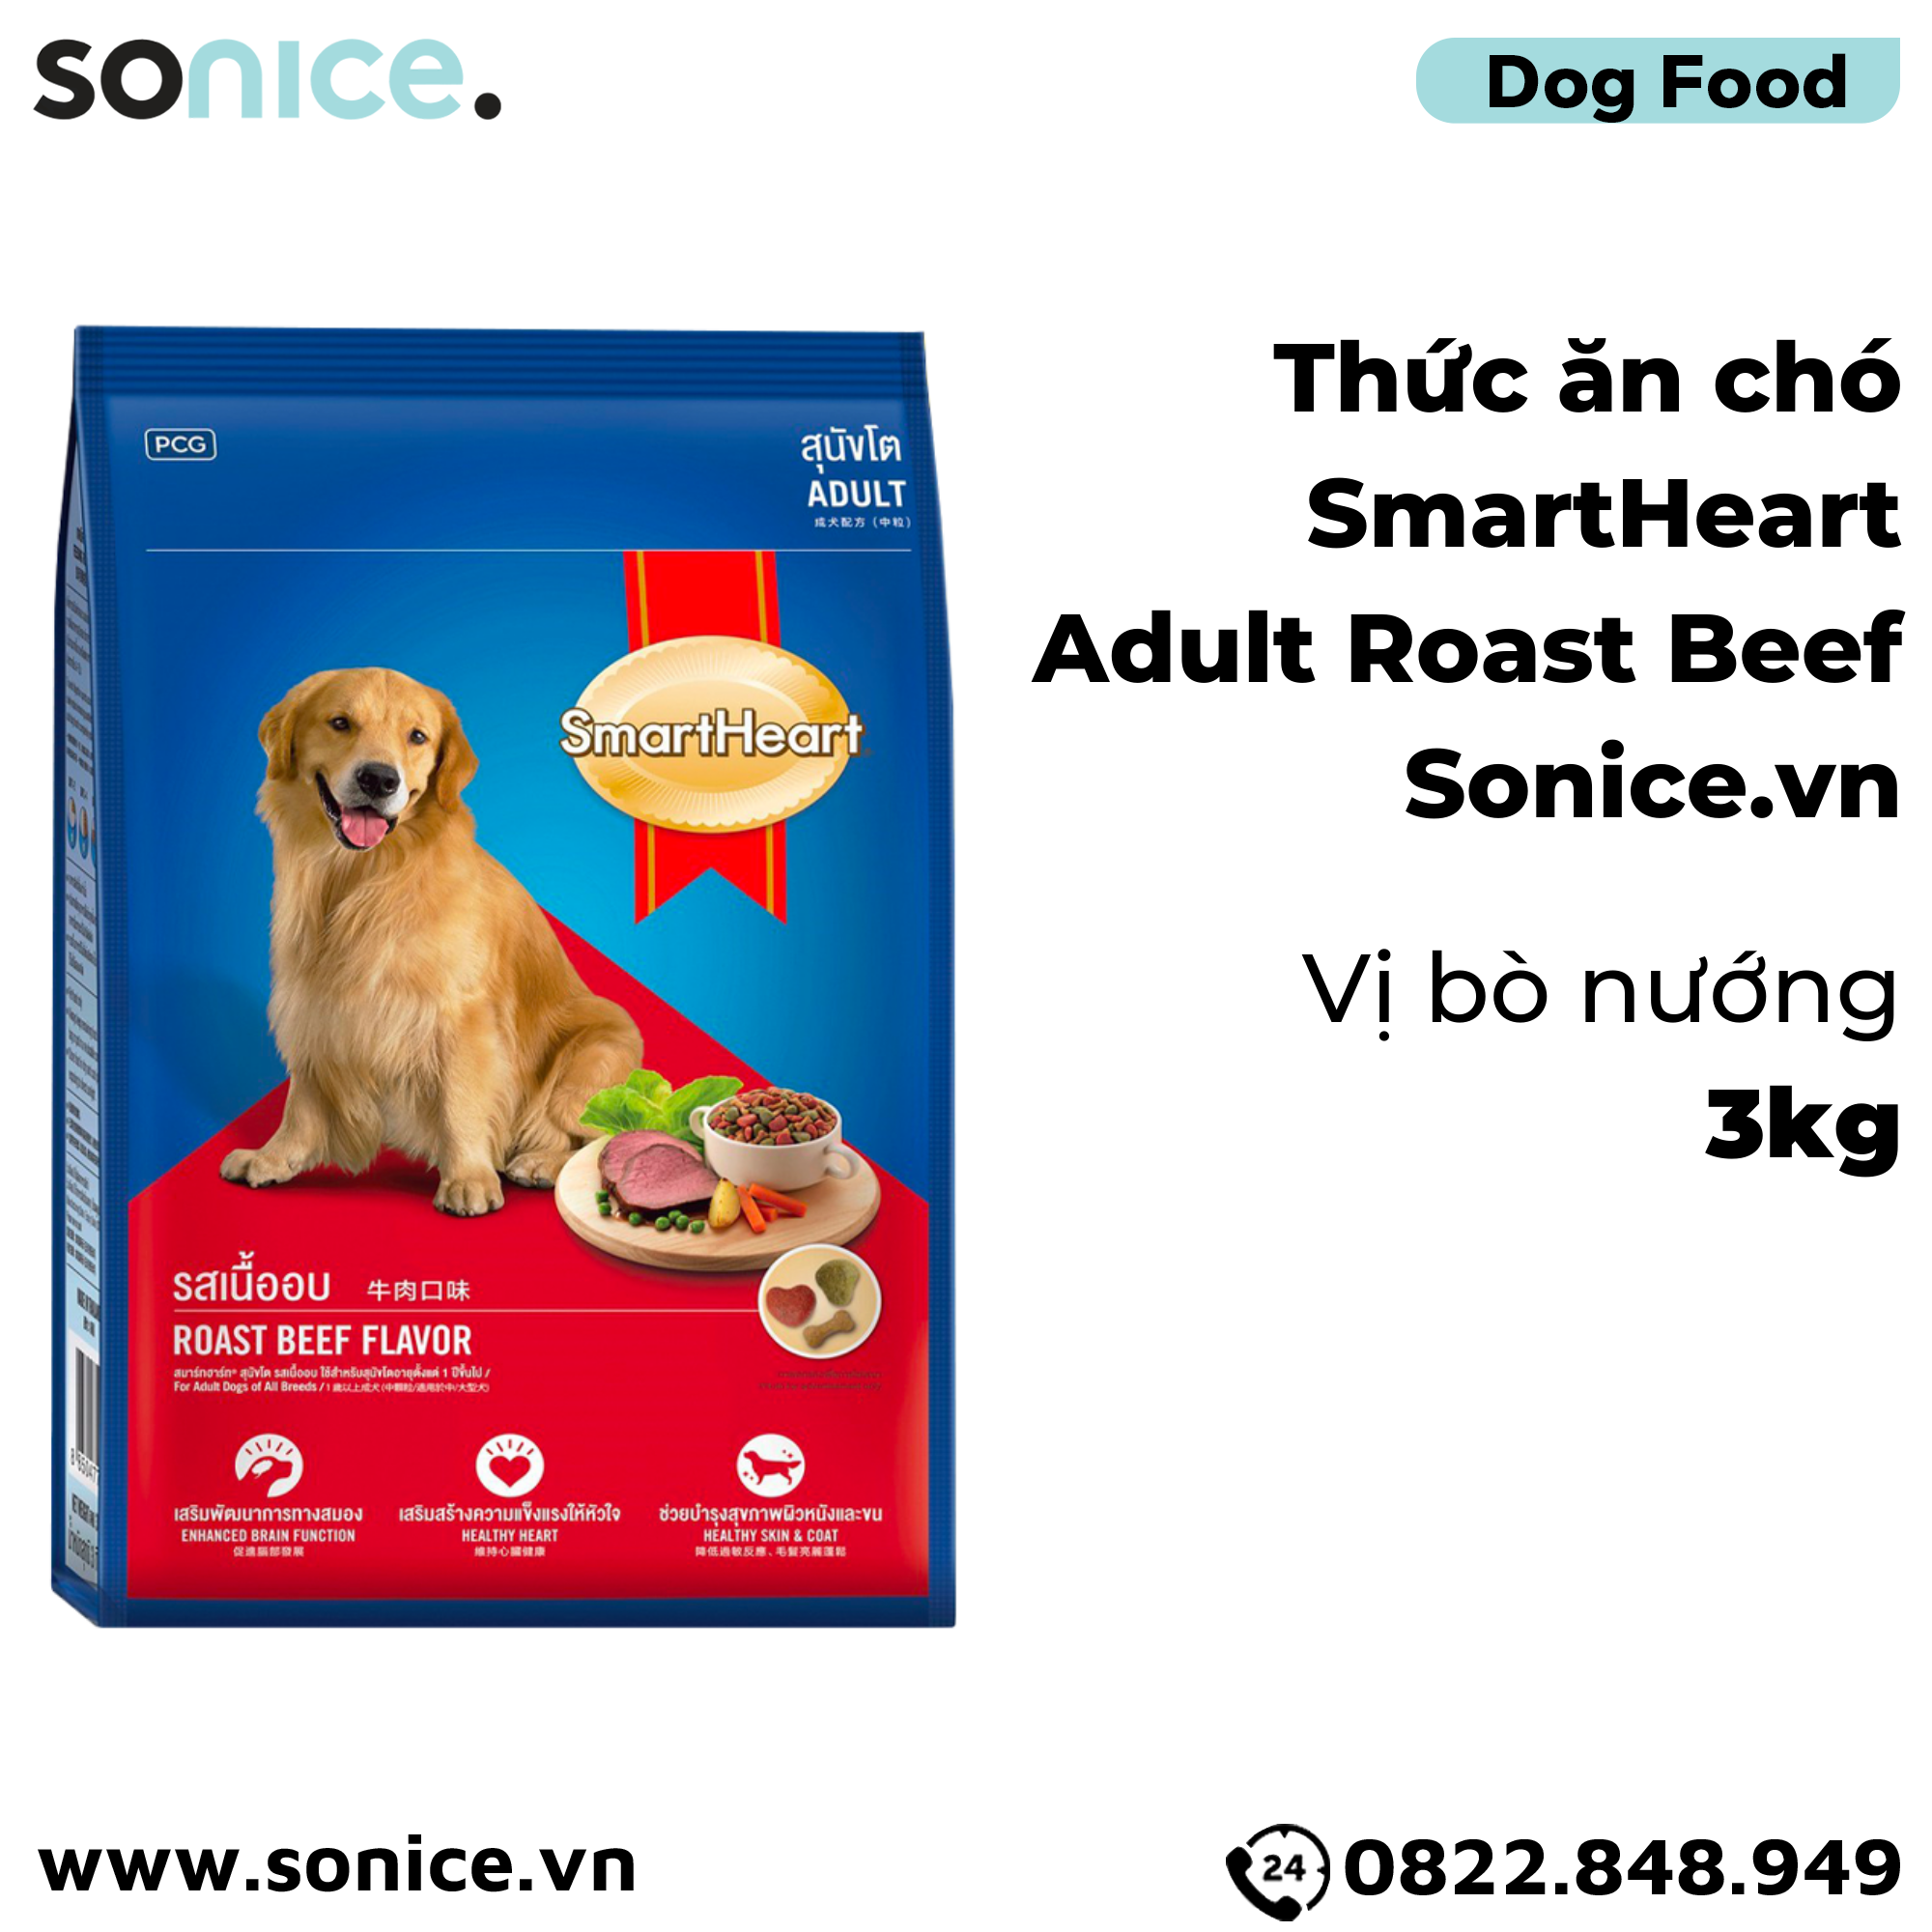  Thức ăn chó SmartHeart Adult Roast Beef 3kg - vị Bò nướng SONICE. 